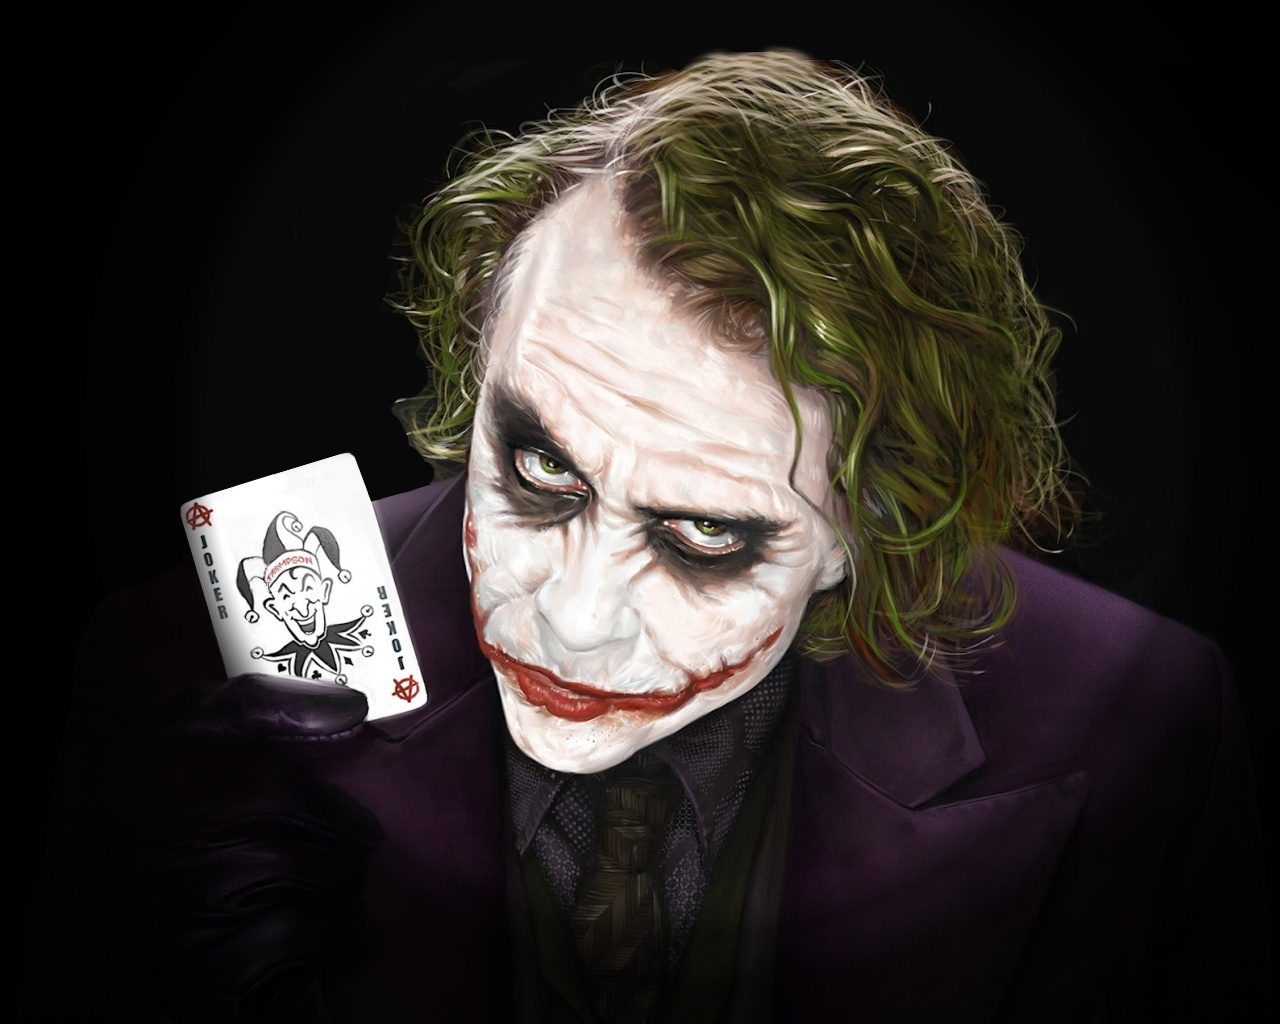 1080p Joker Hd Images